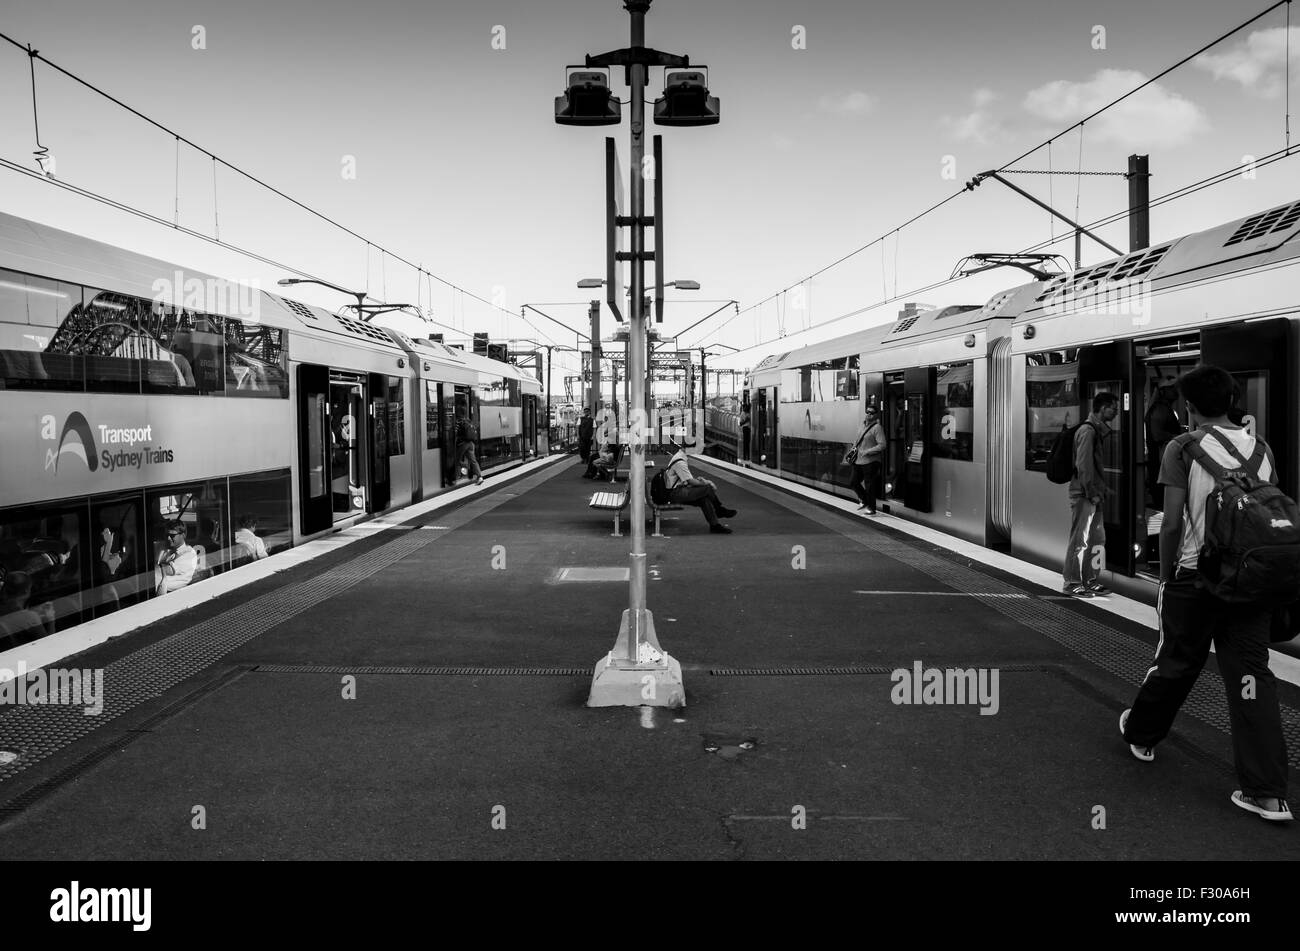 Gare de Milsons point, Sydney, novembre 2014 : les personnes qui quittent et rejoignent deux trains de Sydney de chaque côté de la plate-forme ferroviaire en Australie Banque D'Images